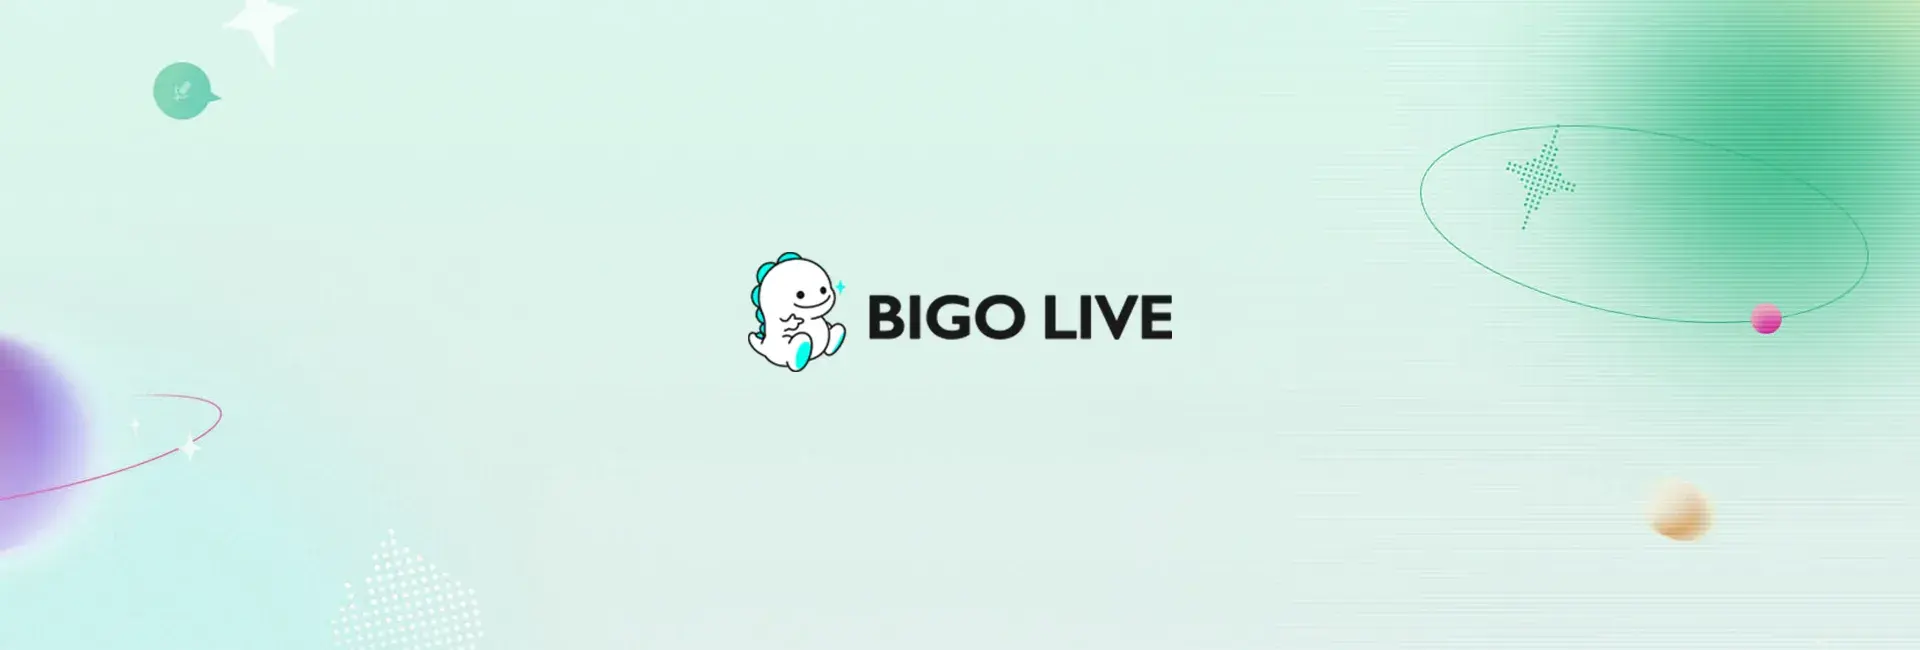 Bigo Live - 240 Diamonds (Global)